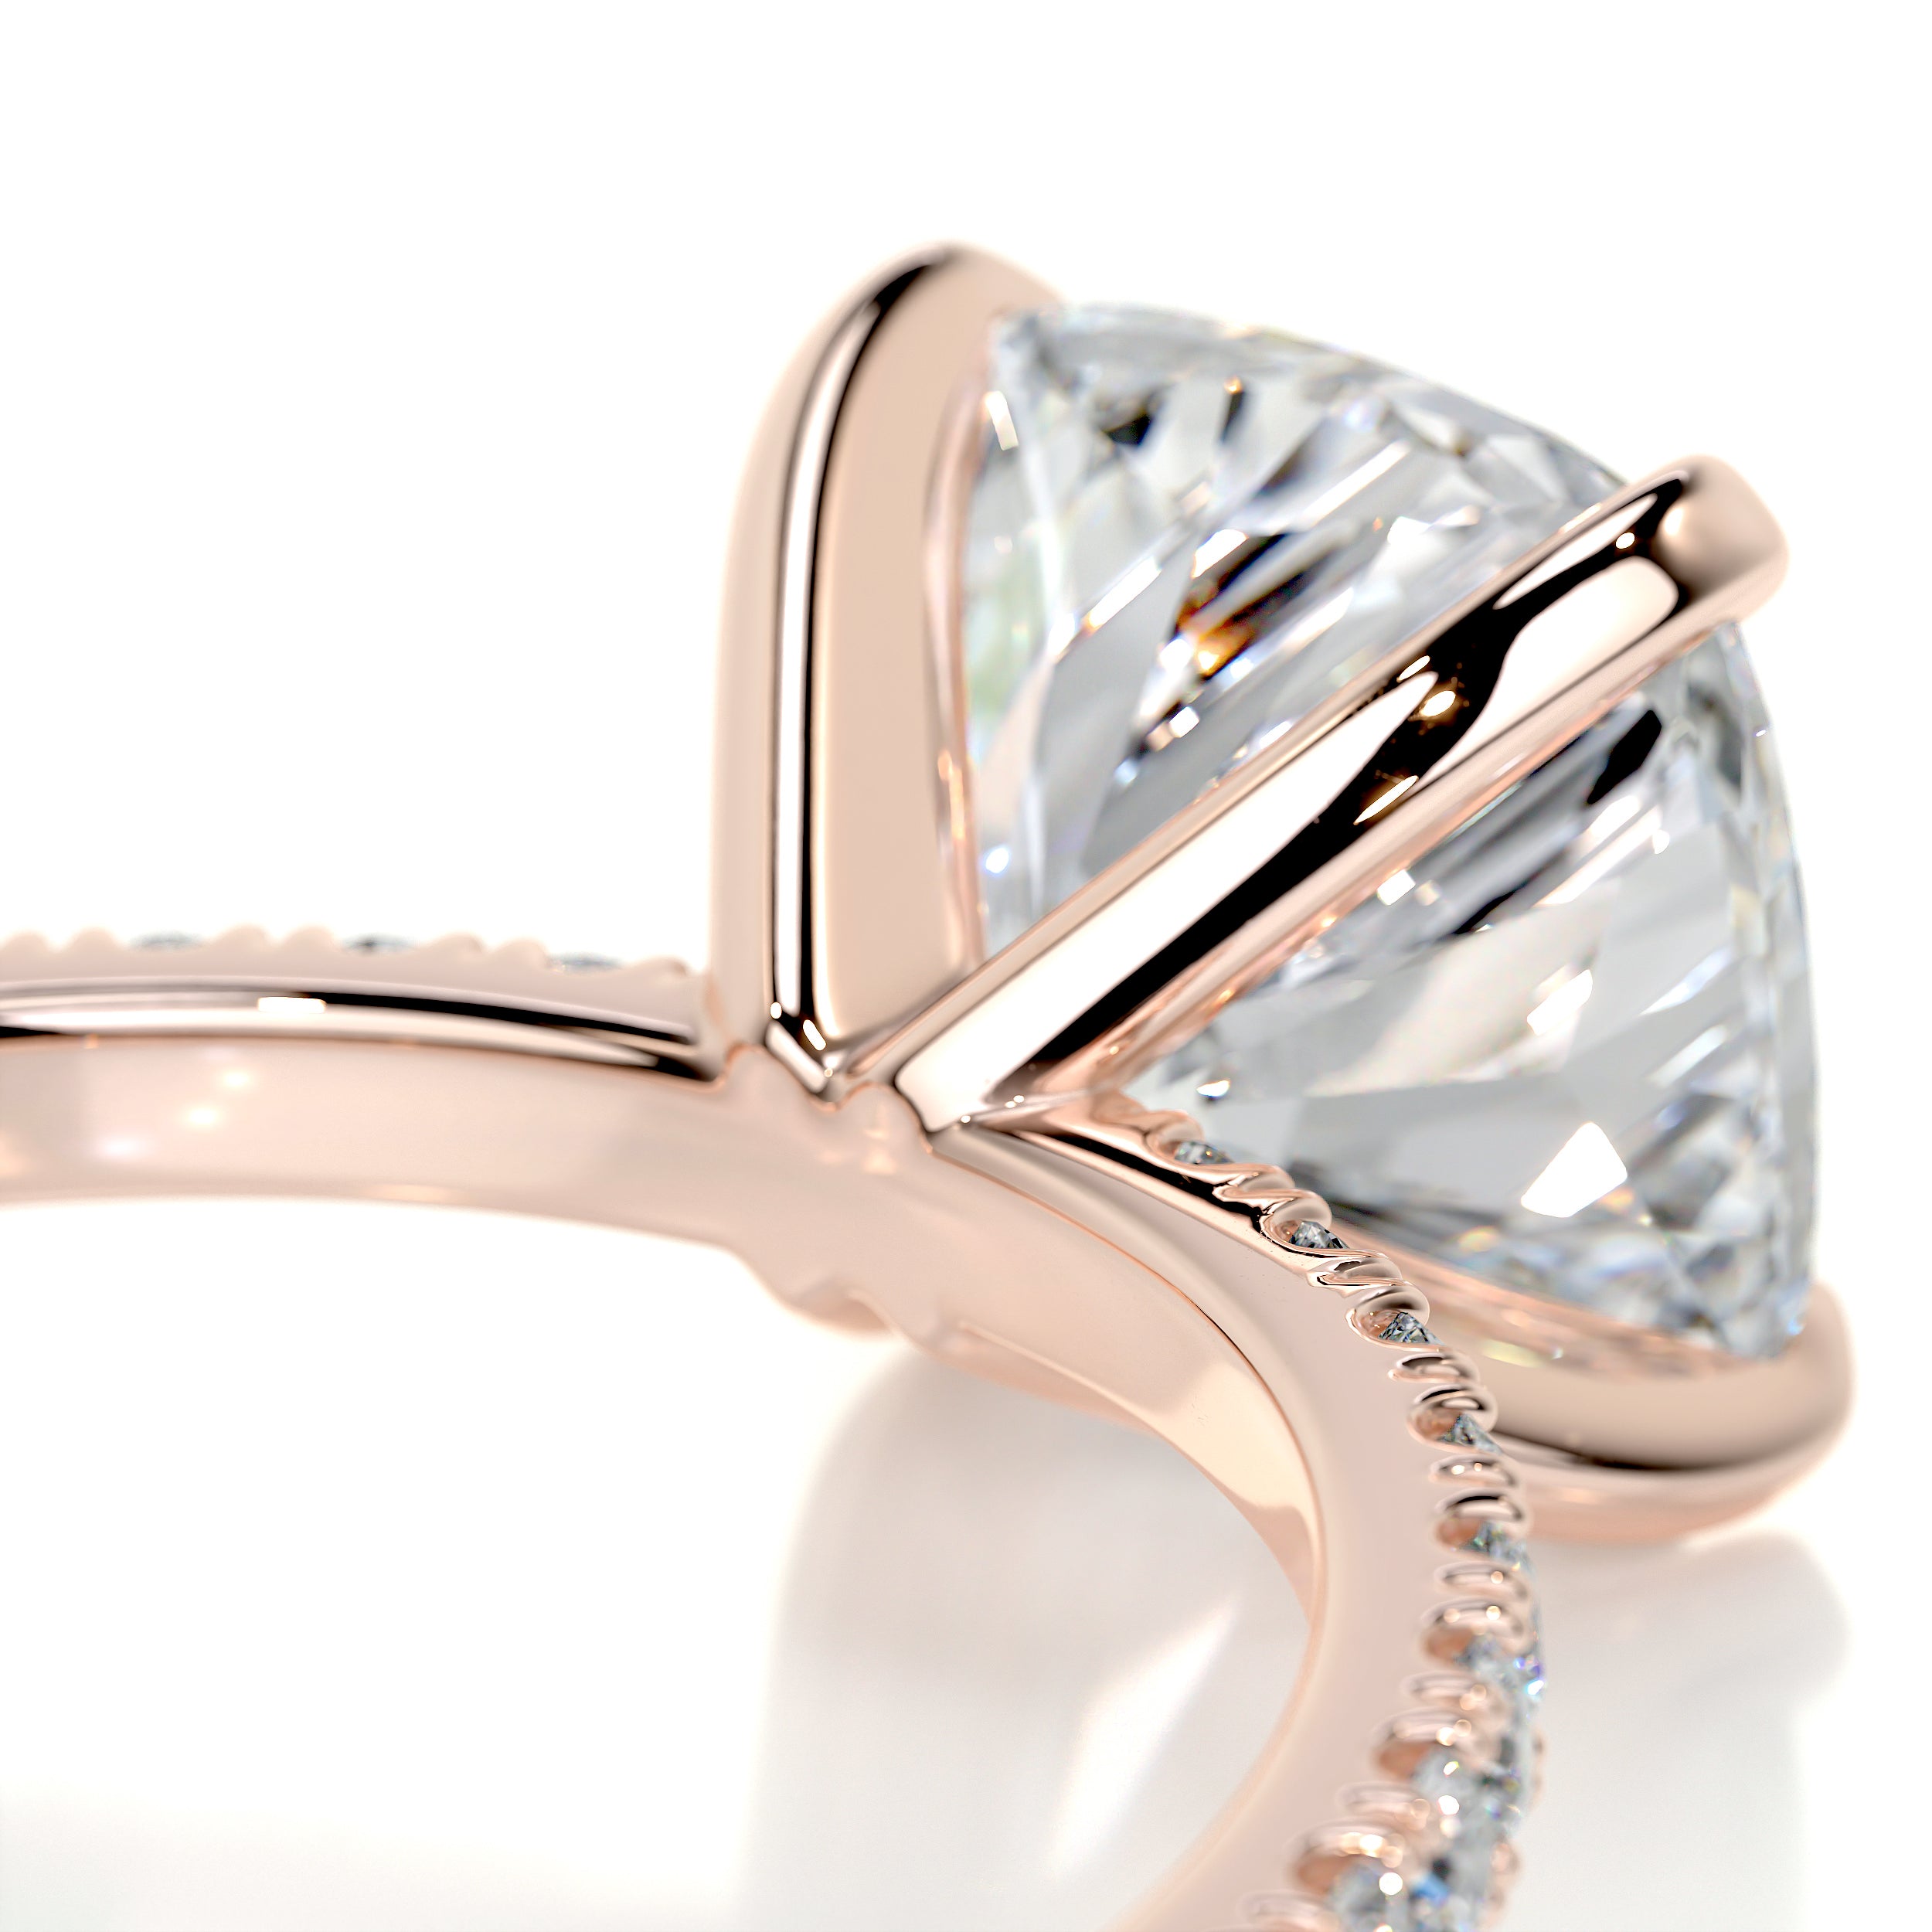 Stephanie Moissanite & Diamonds Ring   (2.8 Carat) -14K Rose Gold